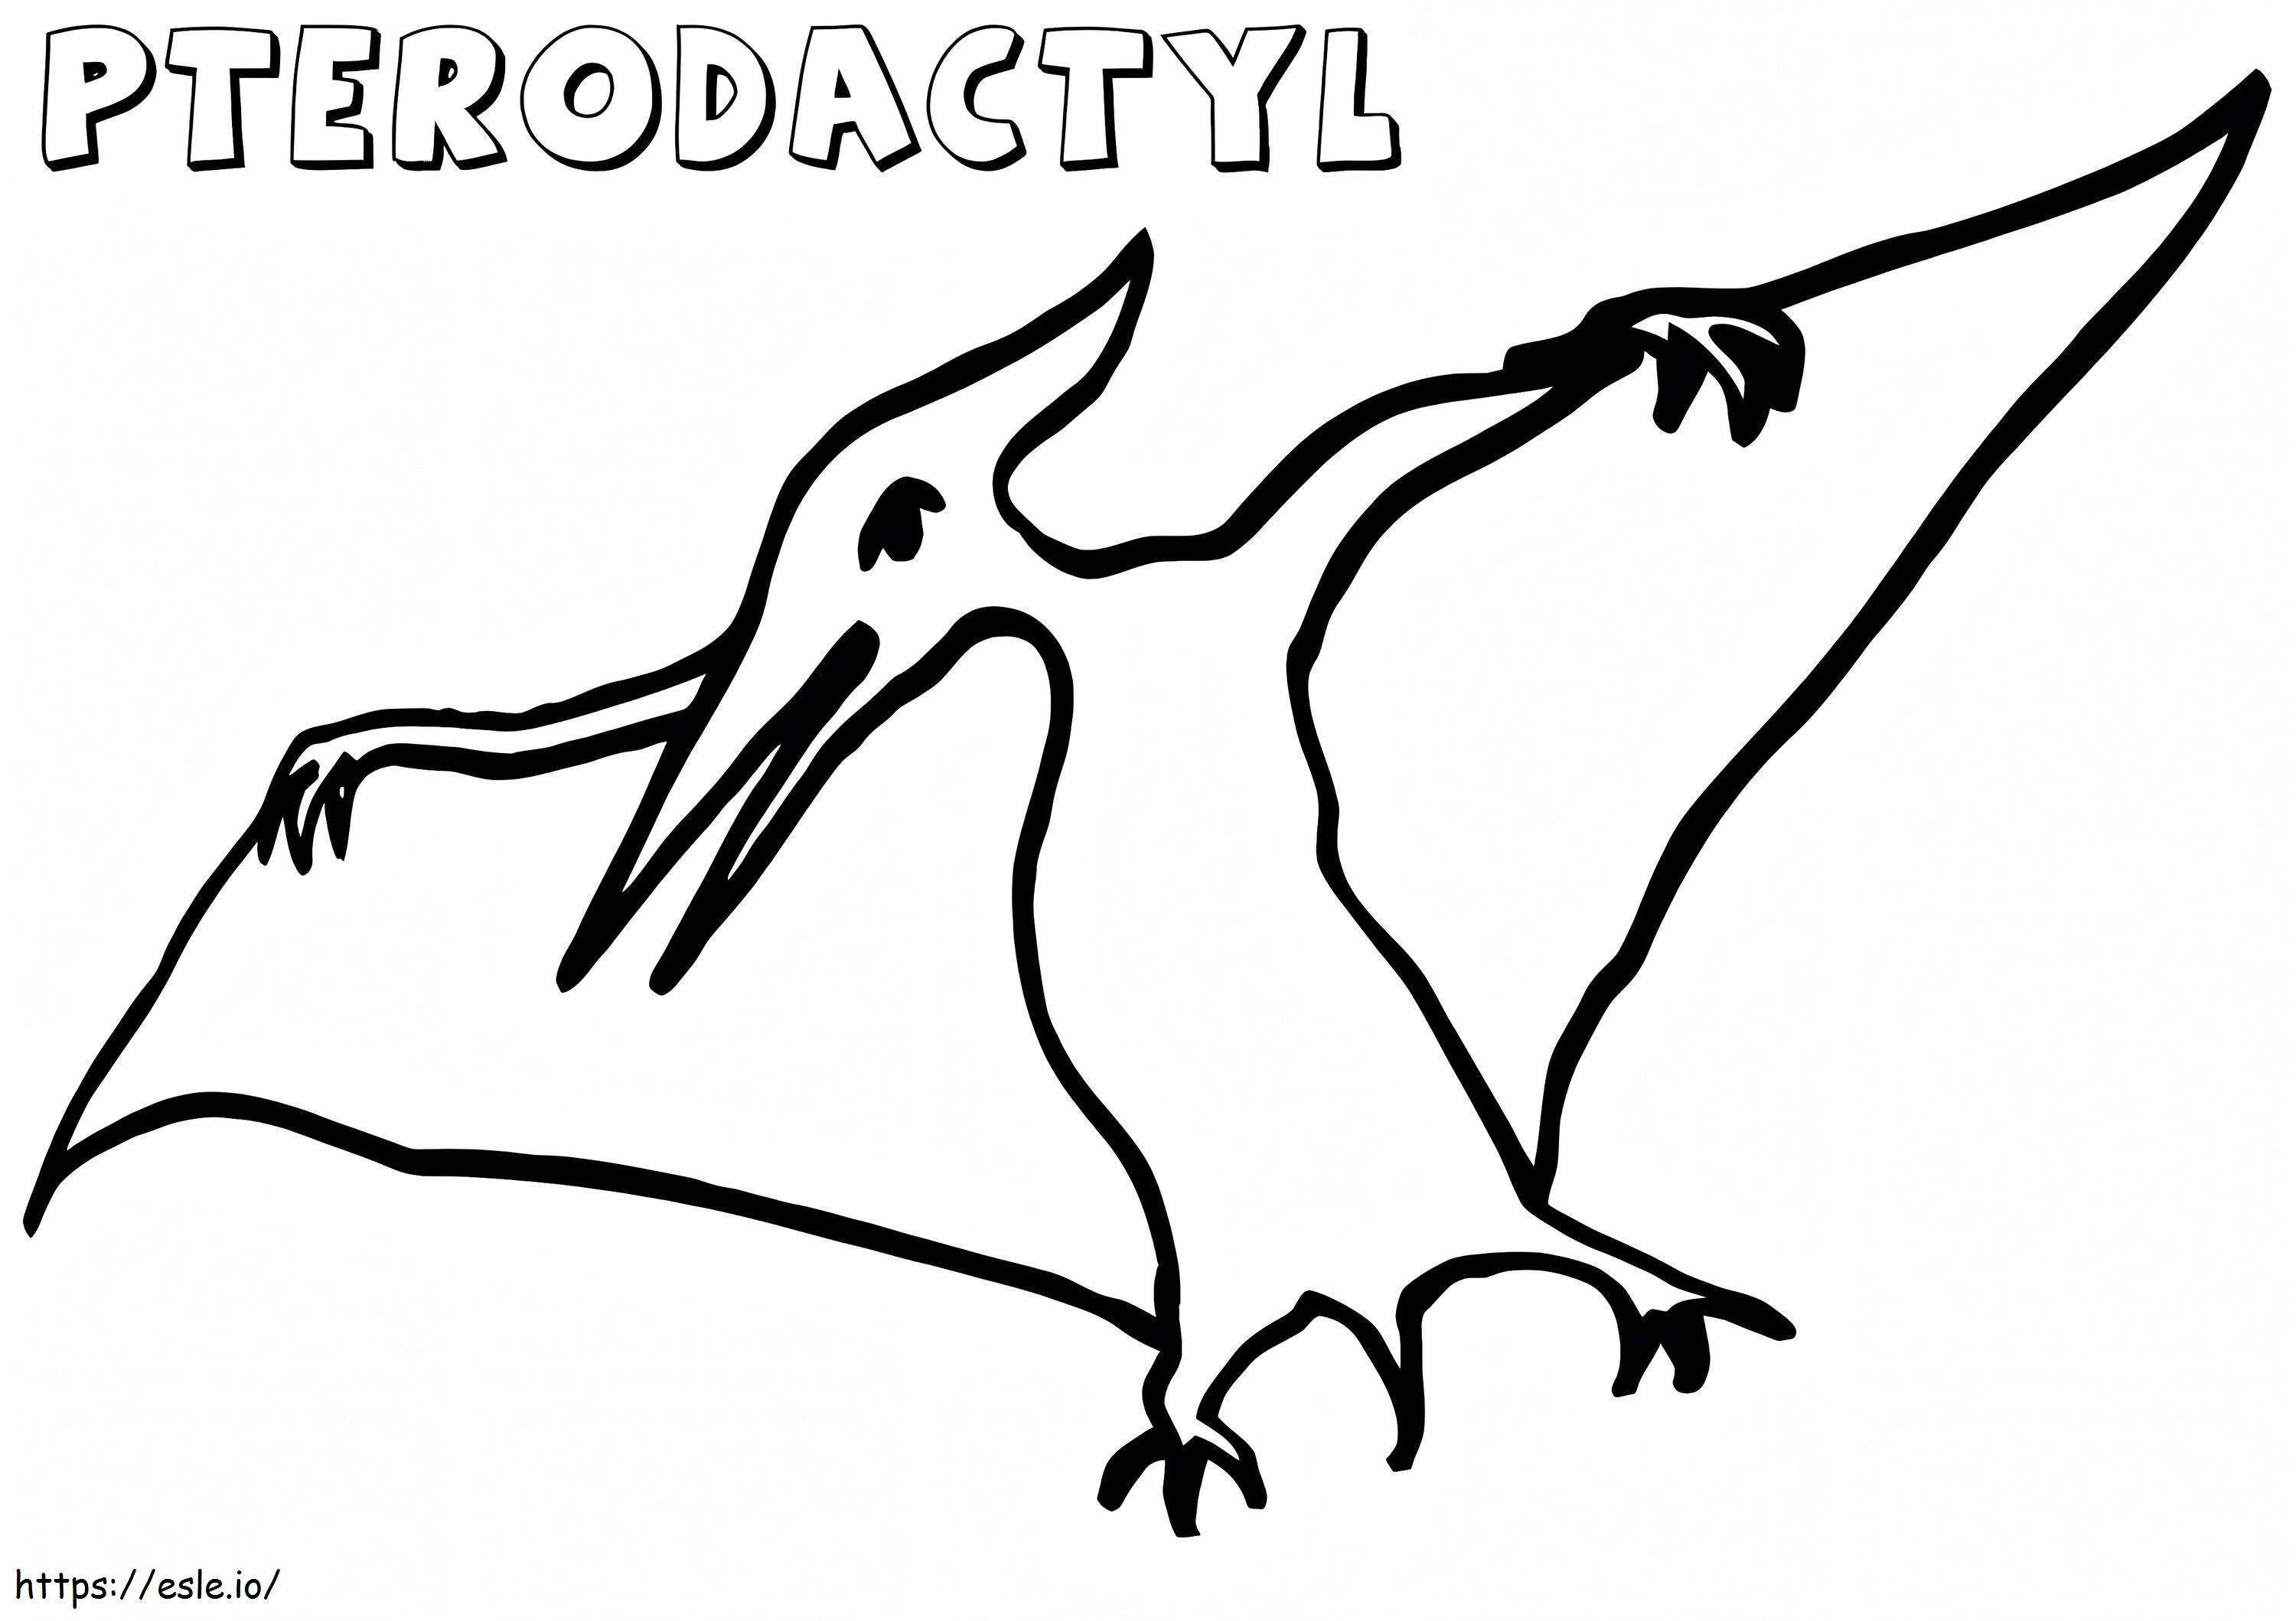 Egyszerű Pterodactyl kifestő